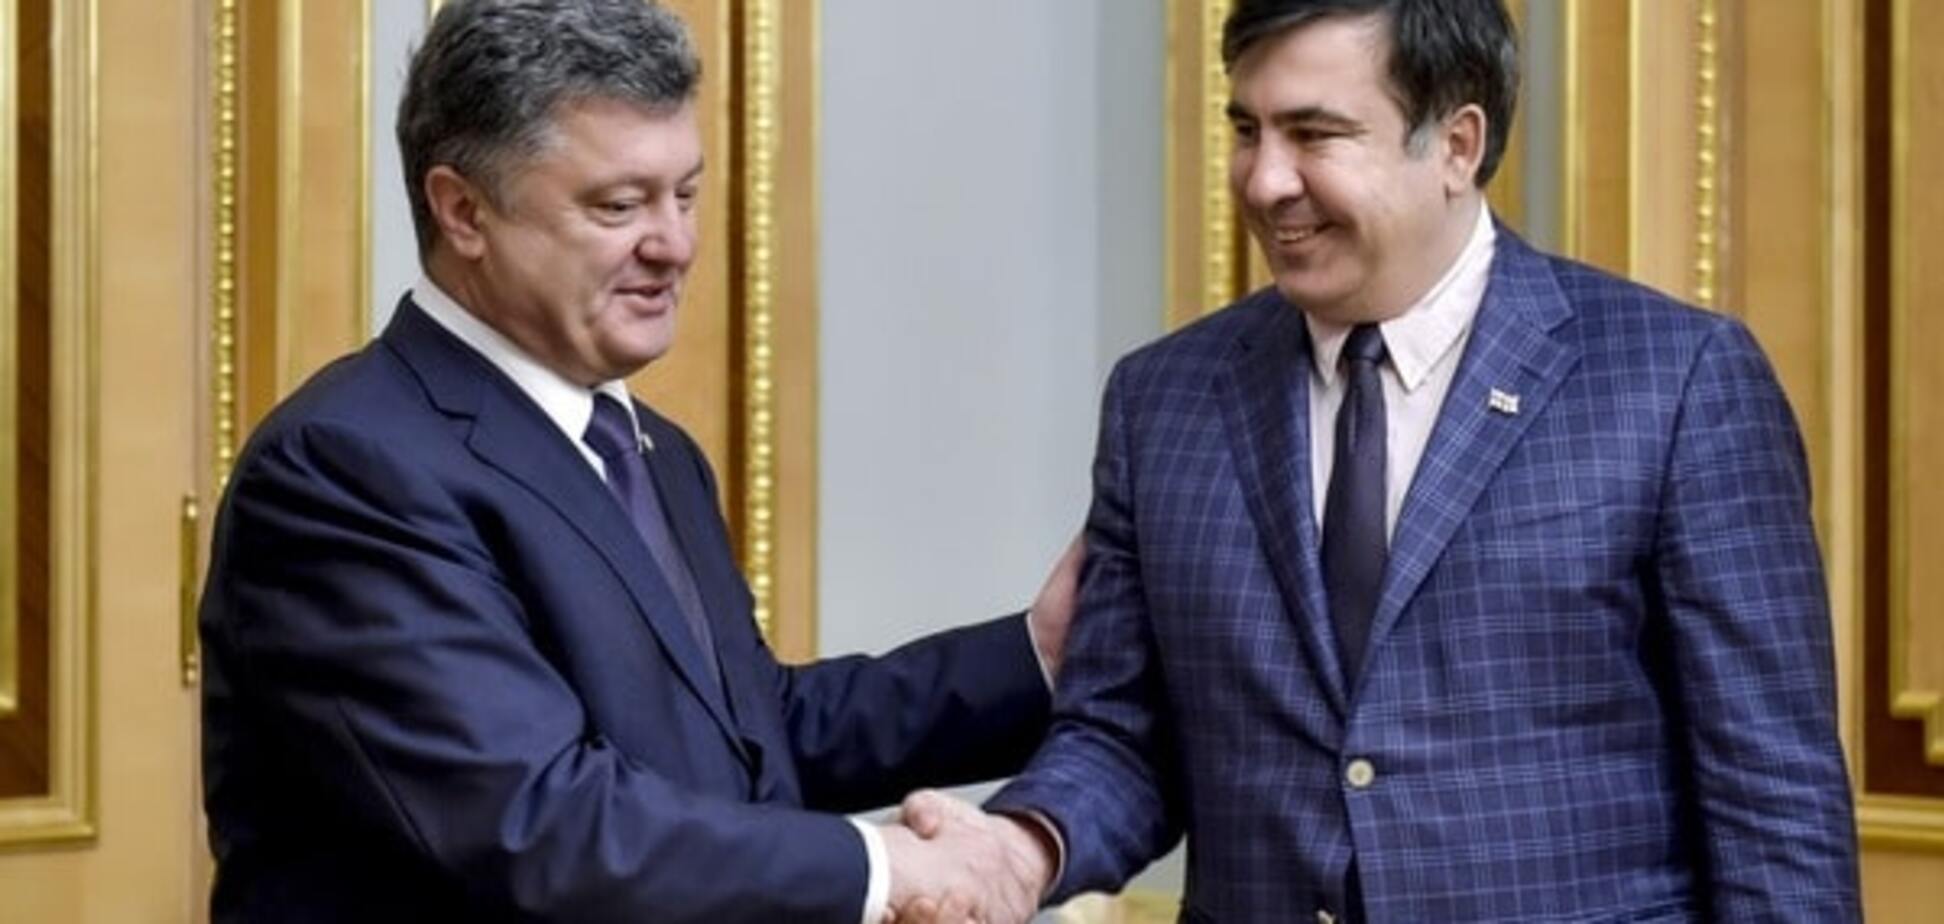 Саакашвили может убедить Порошенко распустить Раду - Тимошенко